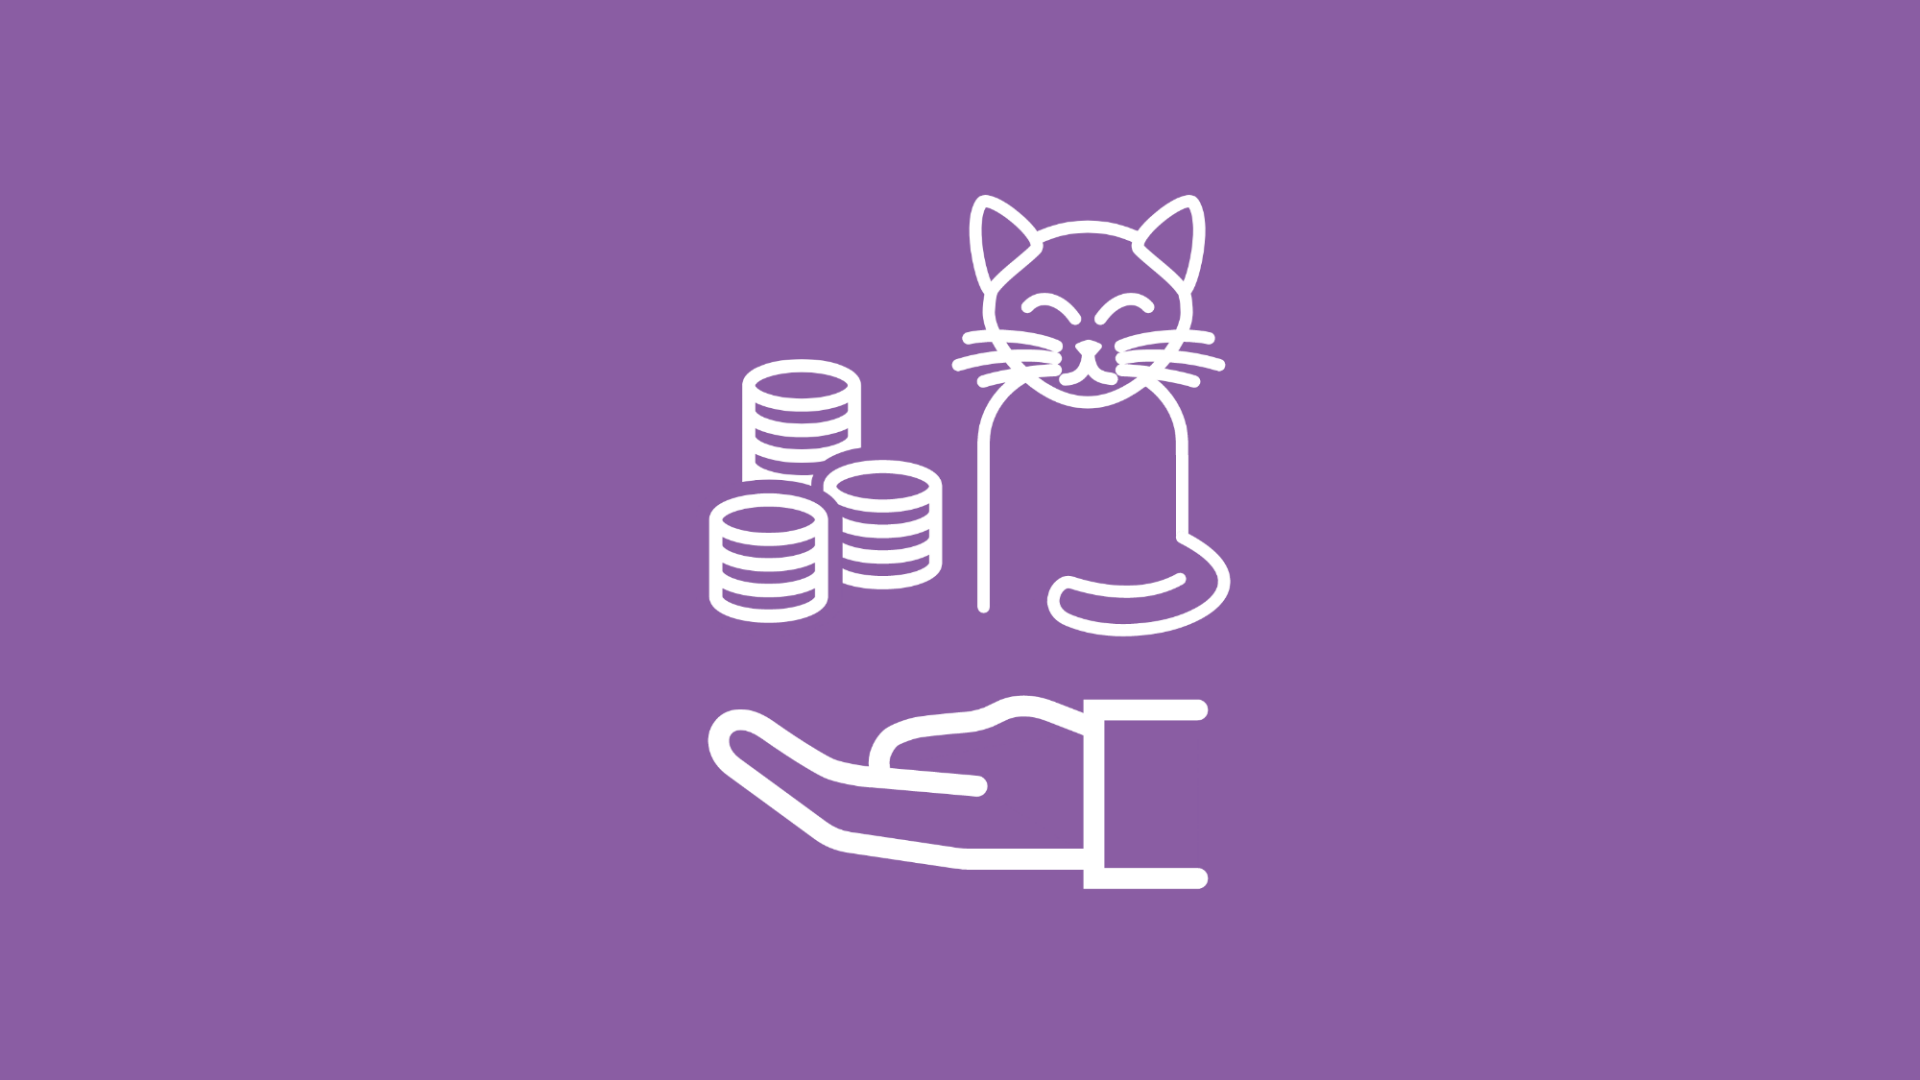 Um die Frage nach den Kosten für eine Katze zu illustrieren, wird eine Katze neben einem Münzstapel über einer offenen Hand im Icon-Stil dargestellt